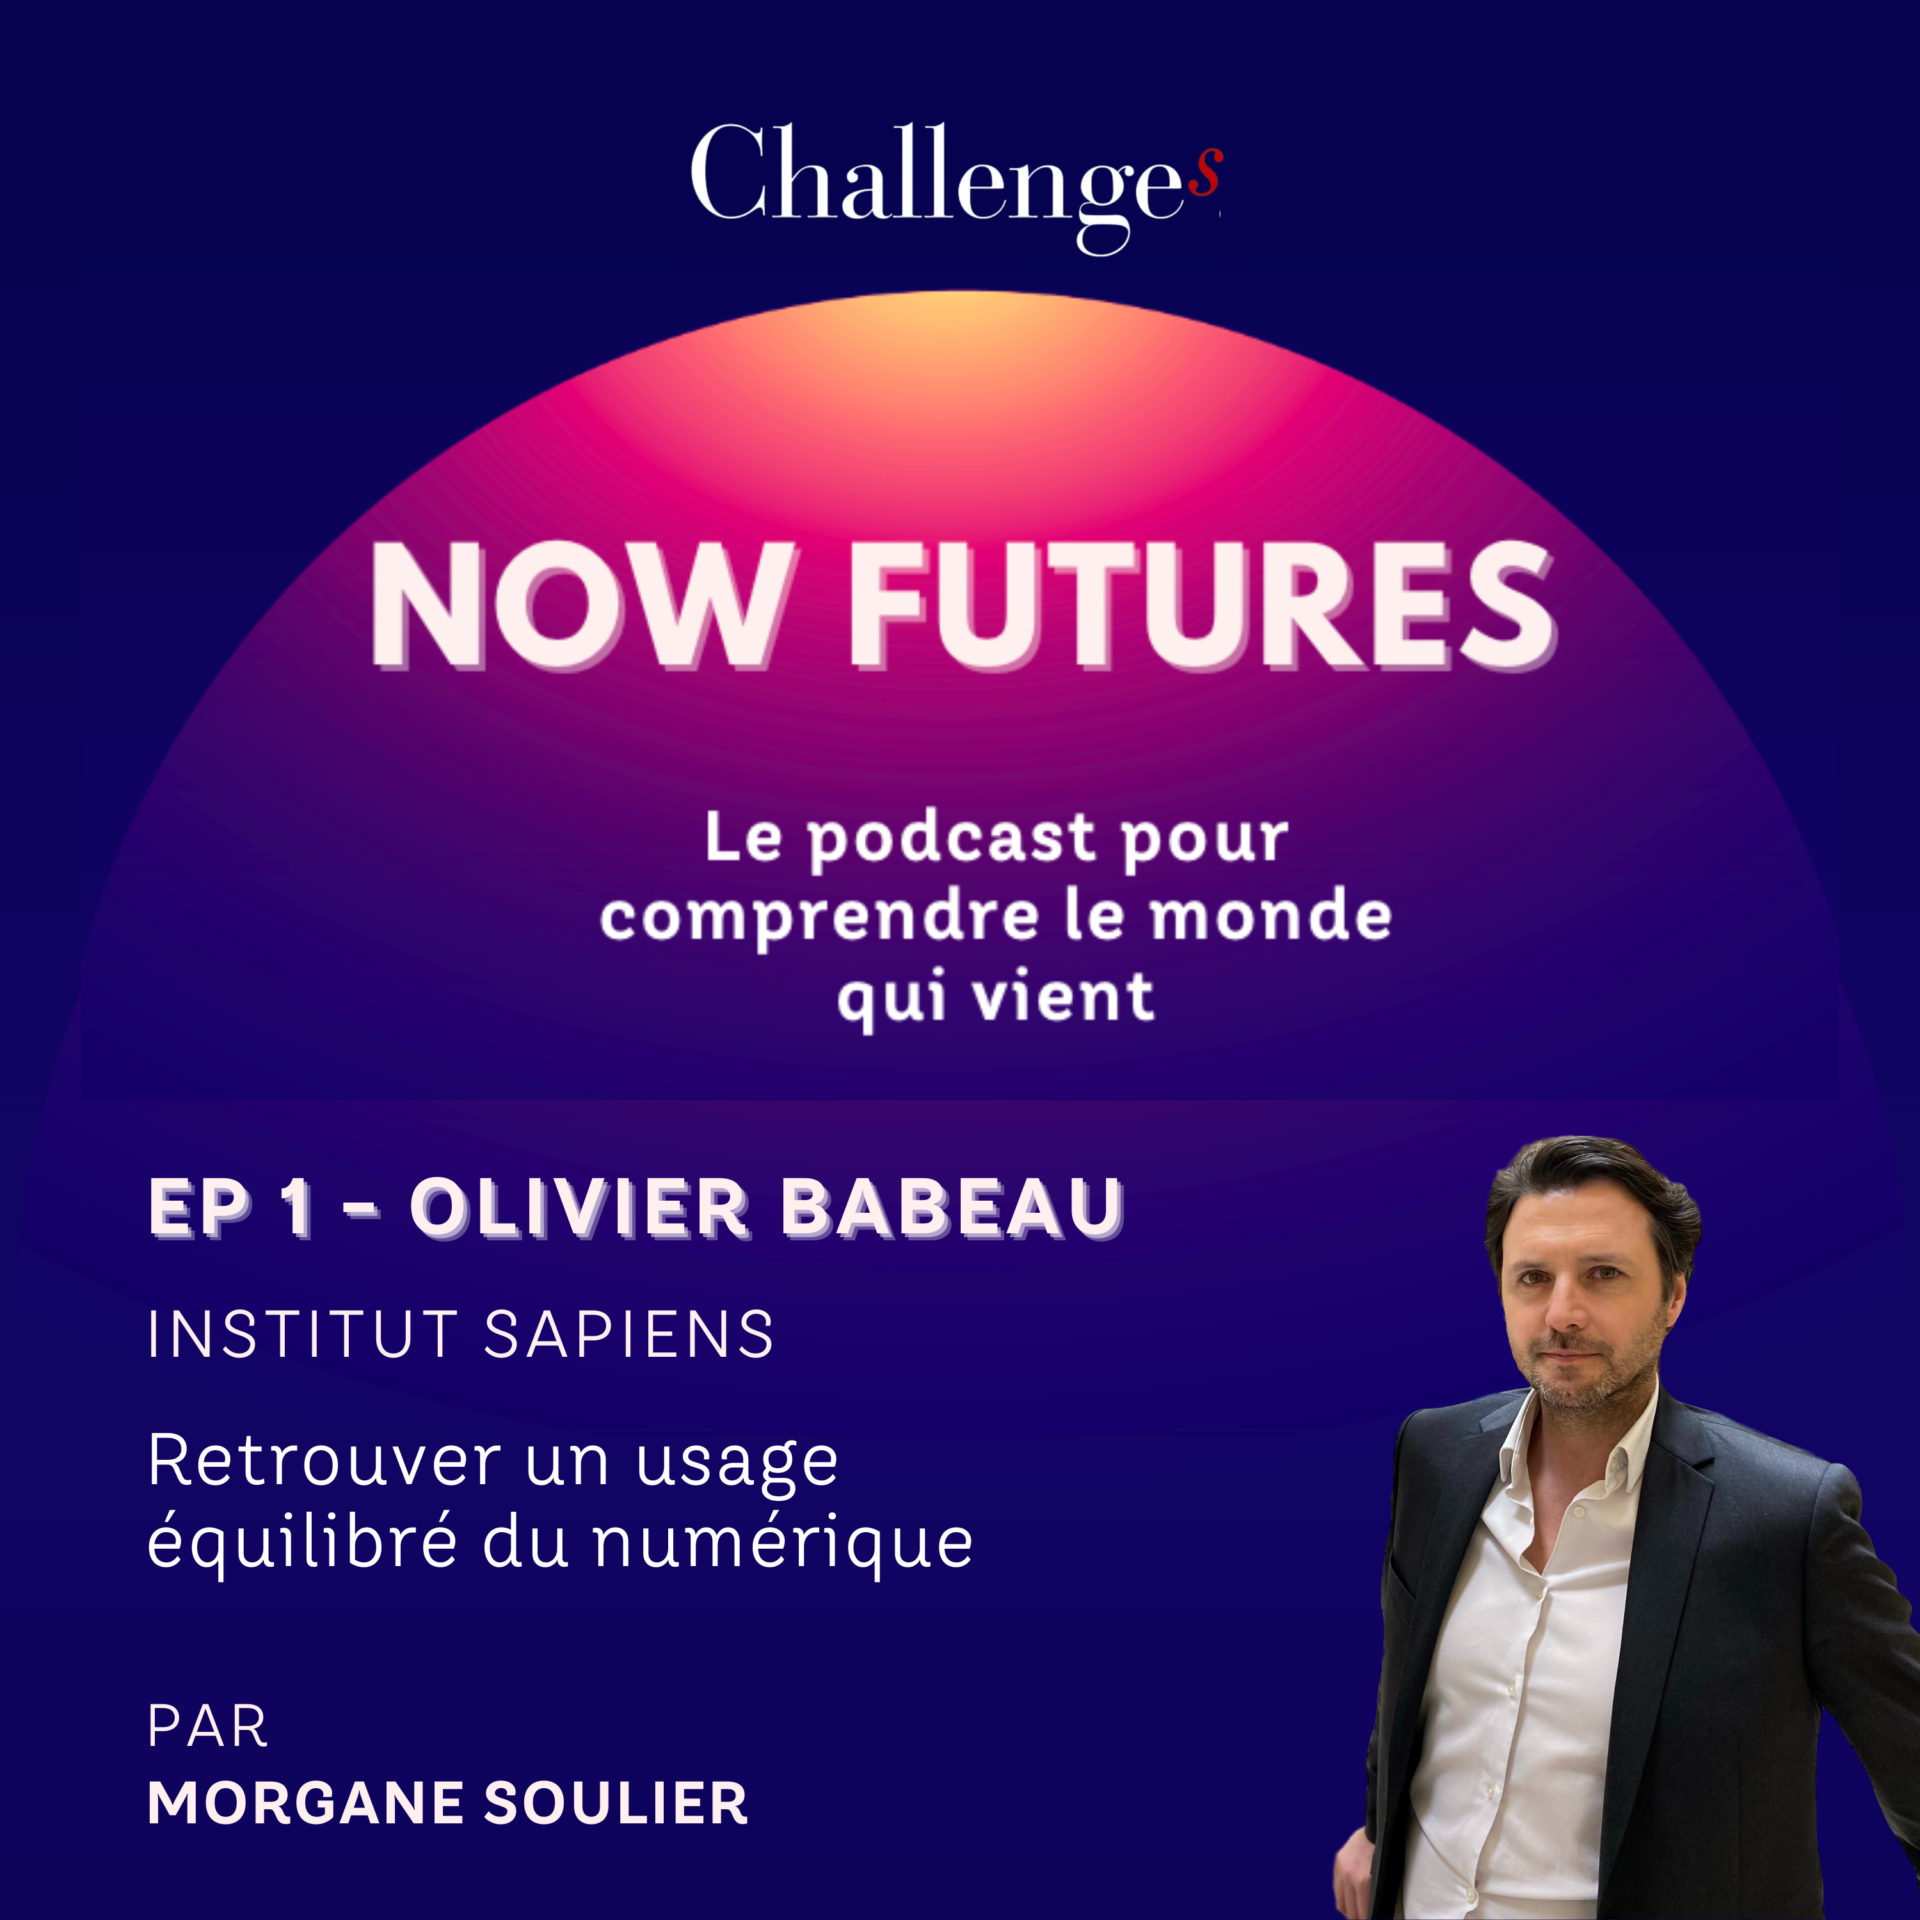 Ep 1- Retrouver un usage équilibré du numérique, avec Olivier Babeau